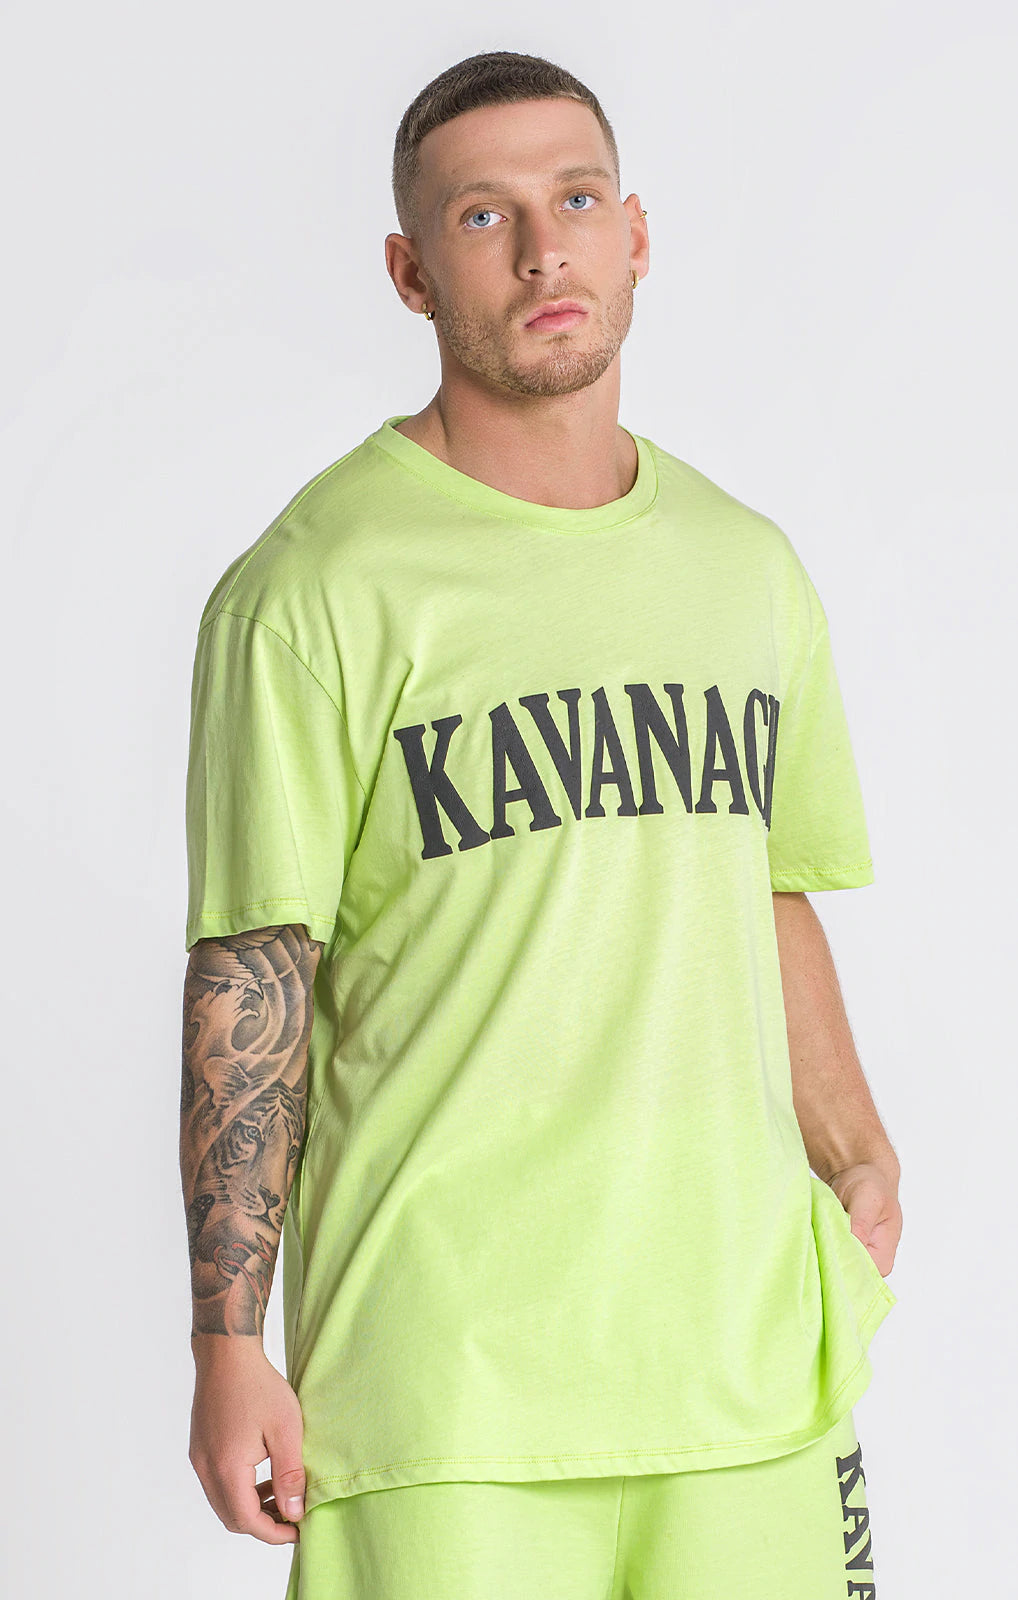 Camiseta KAVANAGH GREEN - GKM002999